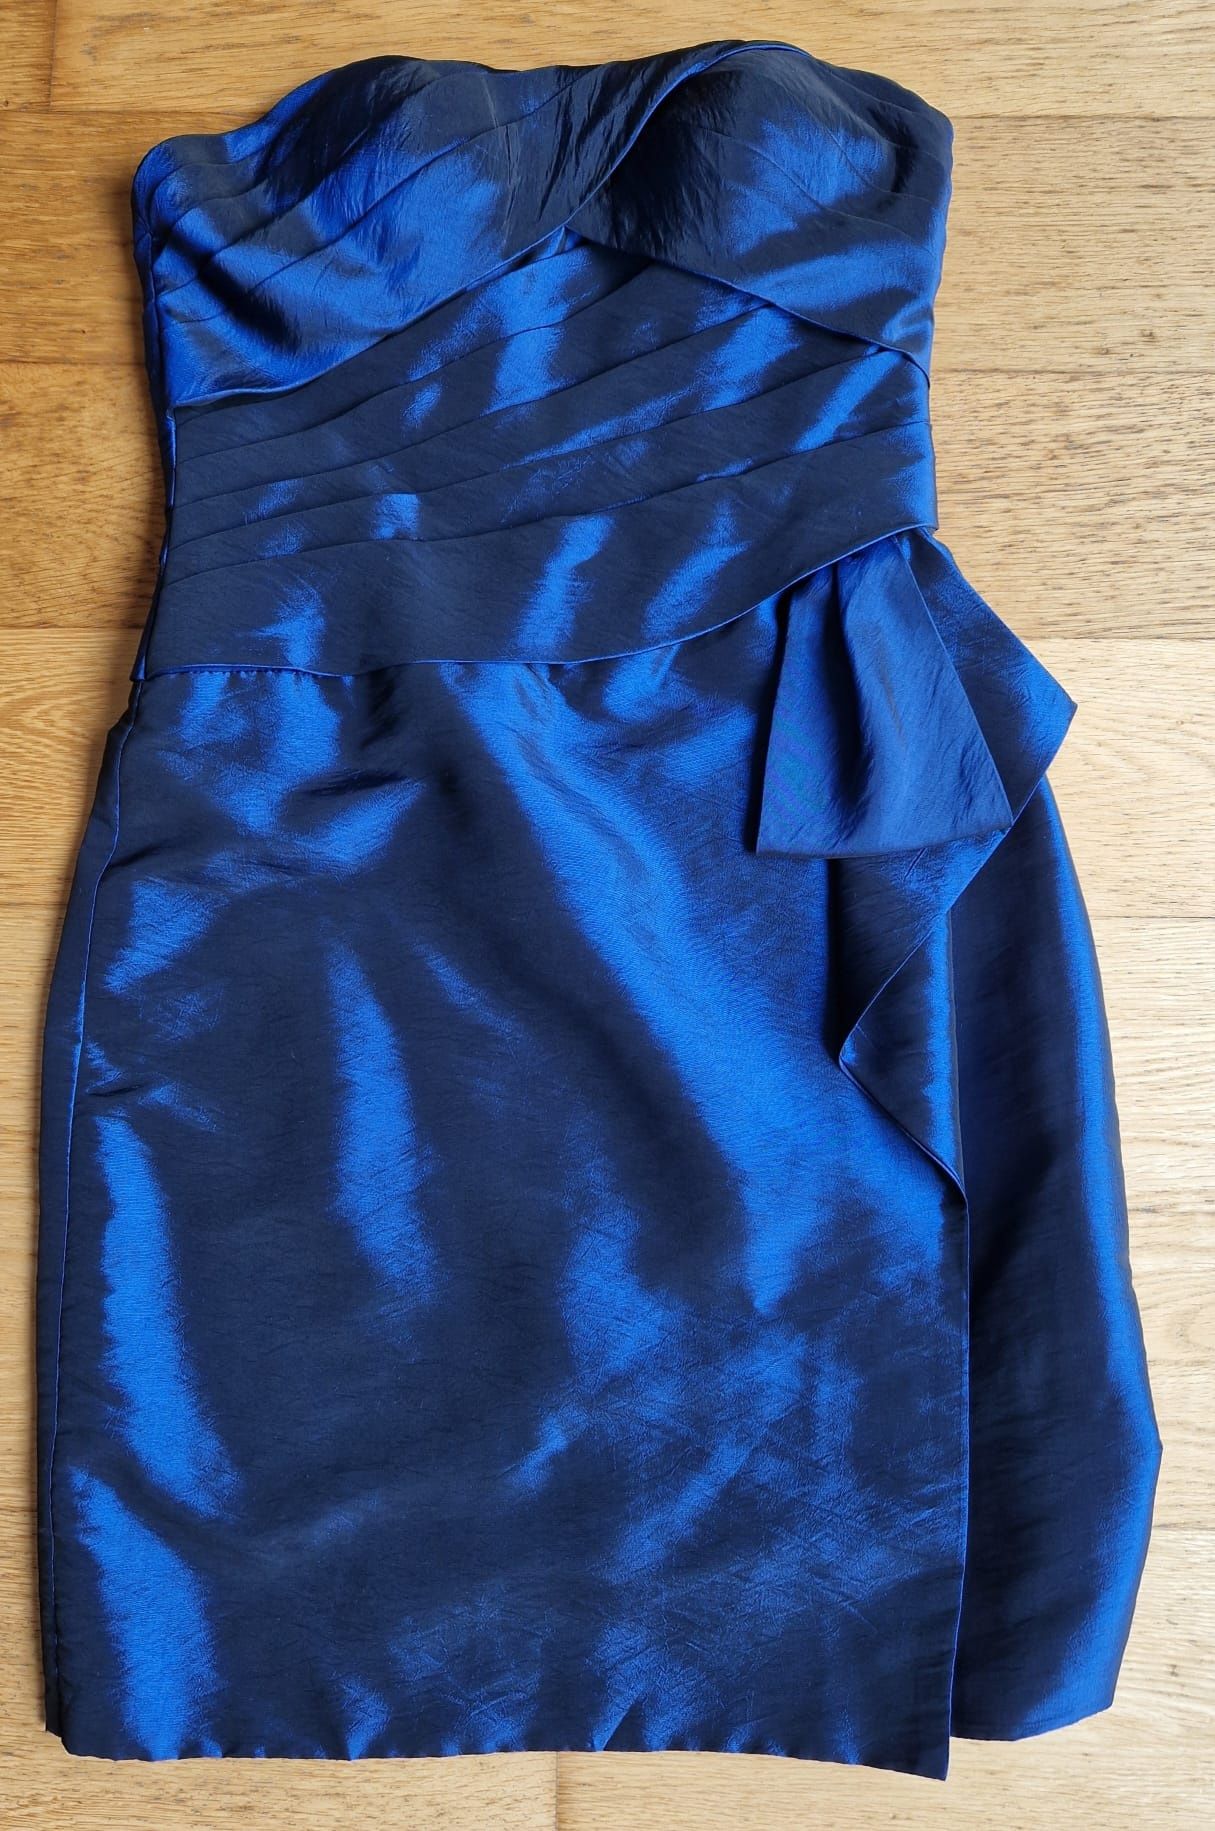 Vestido azul cerimónia - tamanho 38